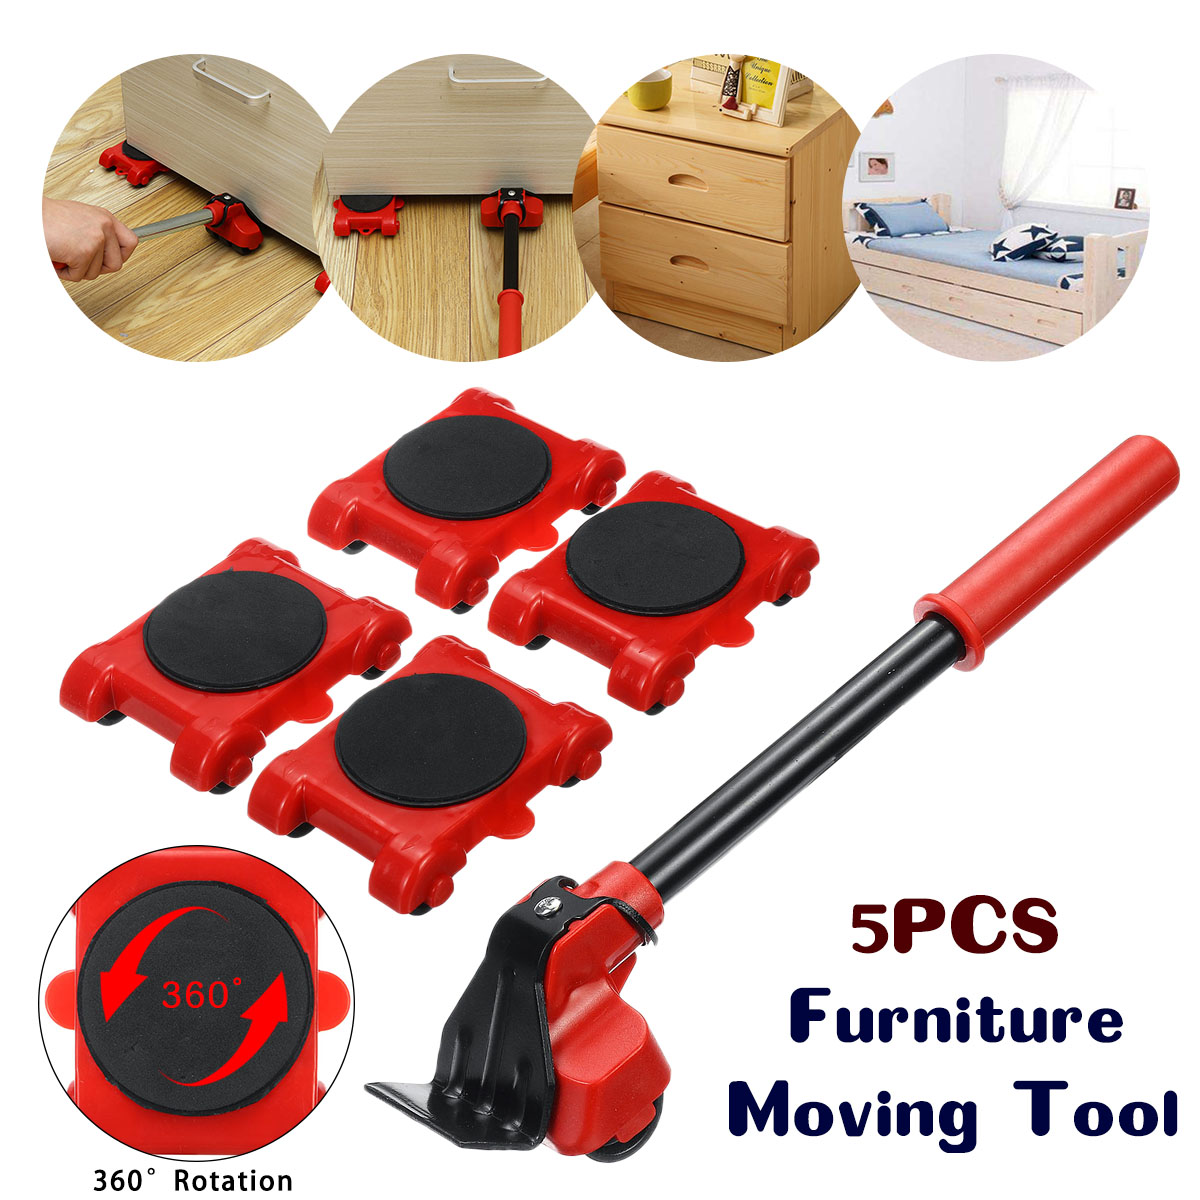 5Pcs-Portable-Furniture-Lifter-Mover-Furniture-Transport-Set-Tool-Kits-Iron-1688071-1